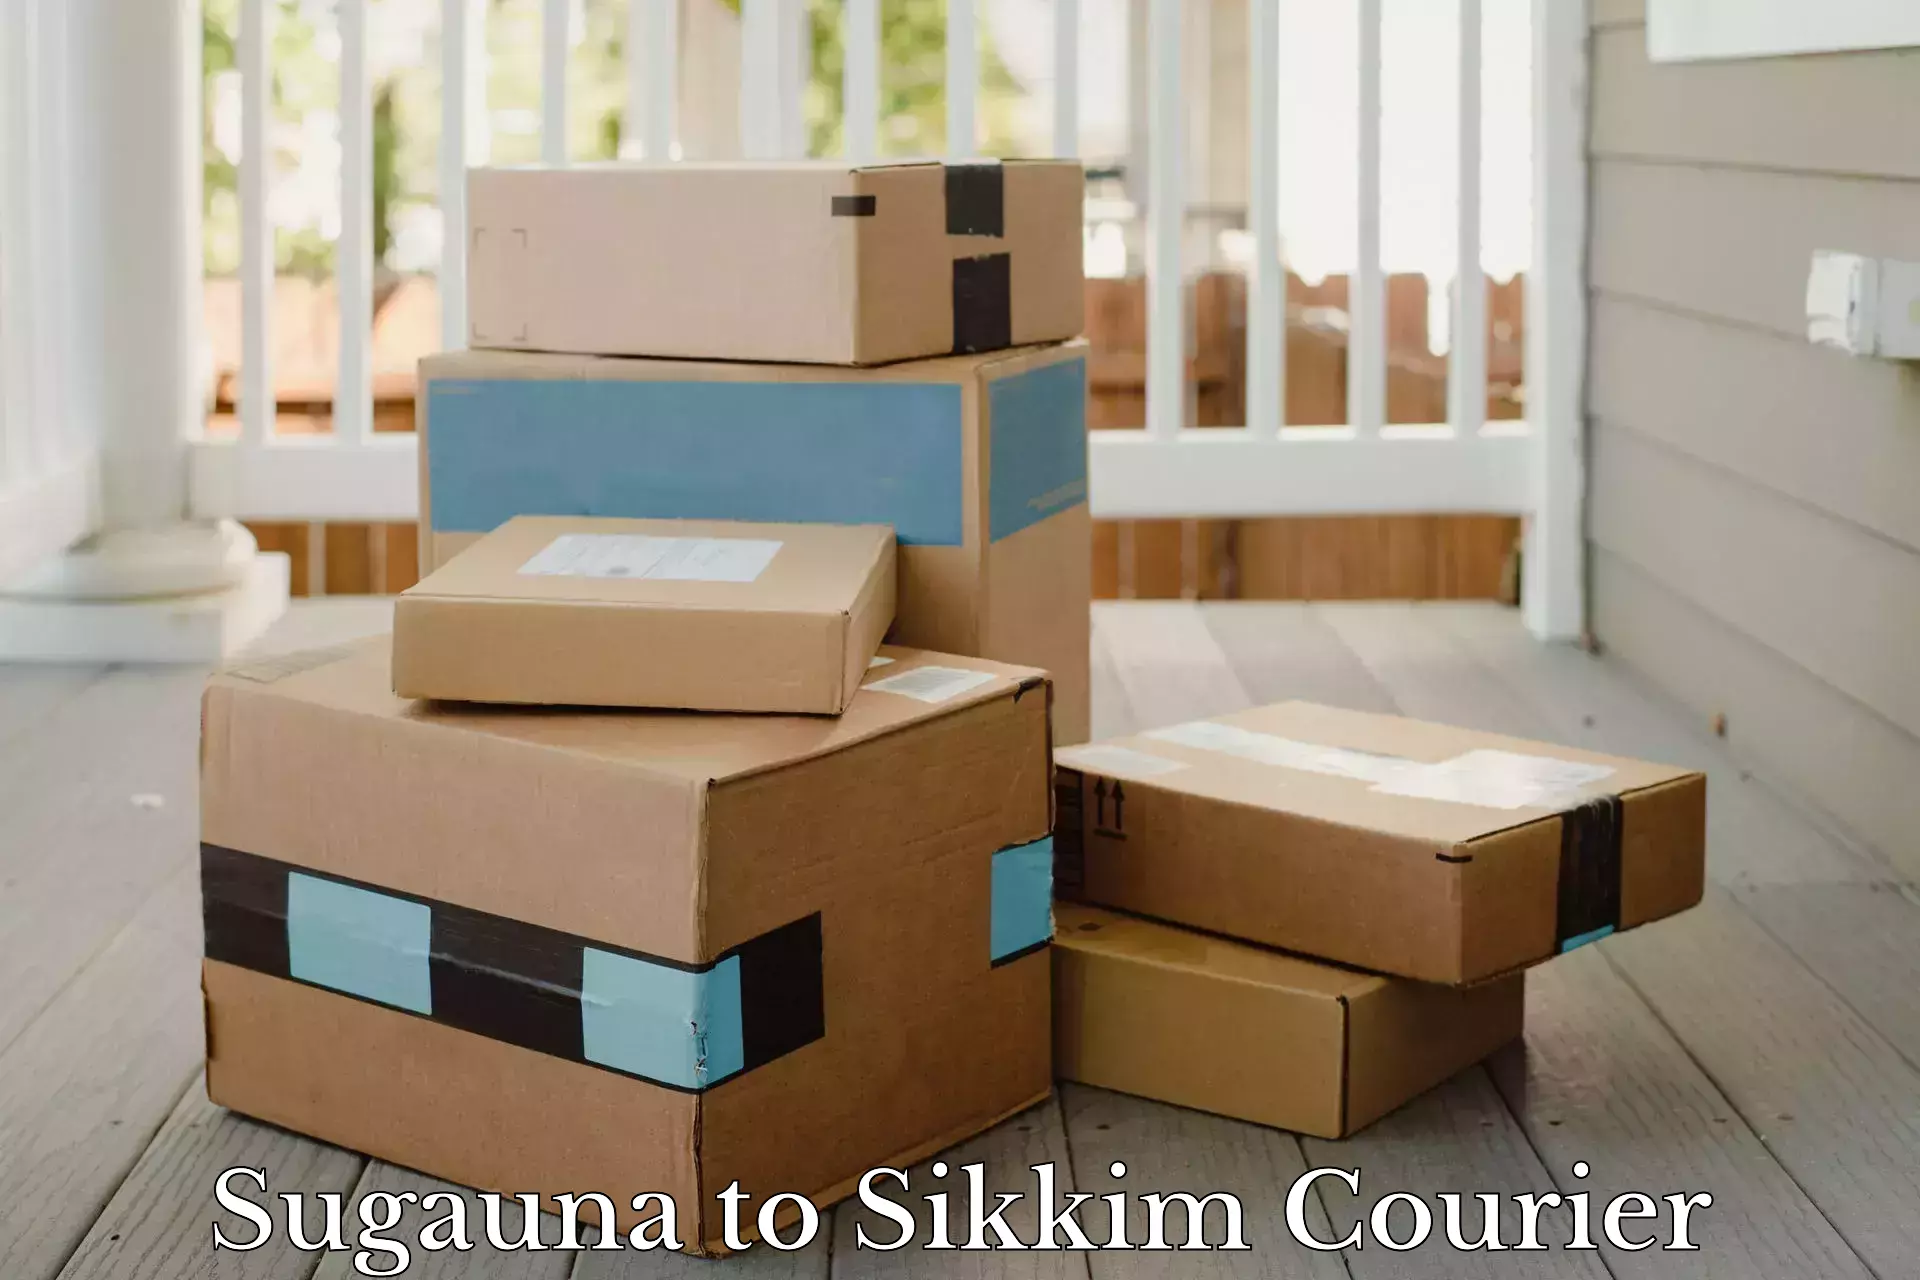 Customer-oriented courier services Sugauna to West Sikkim